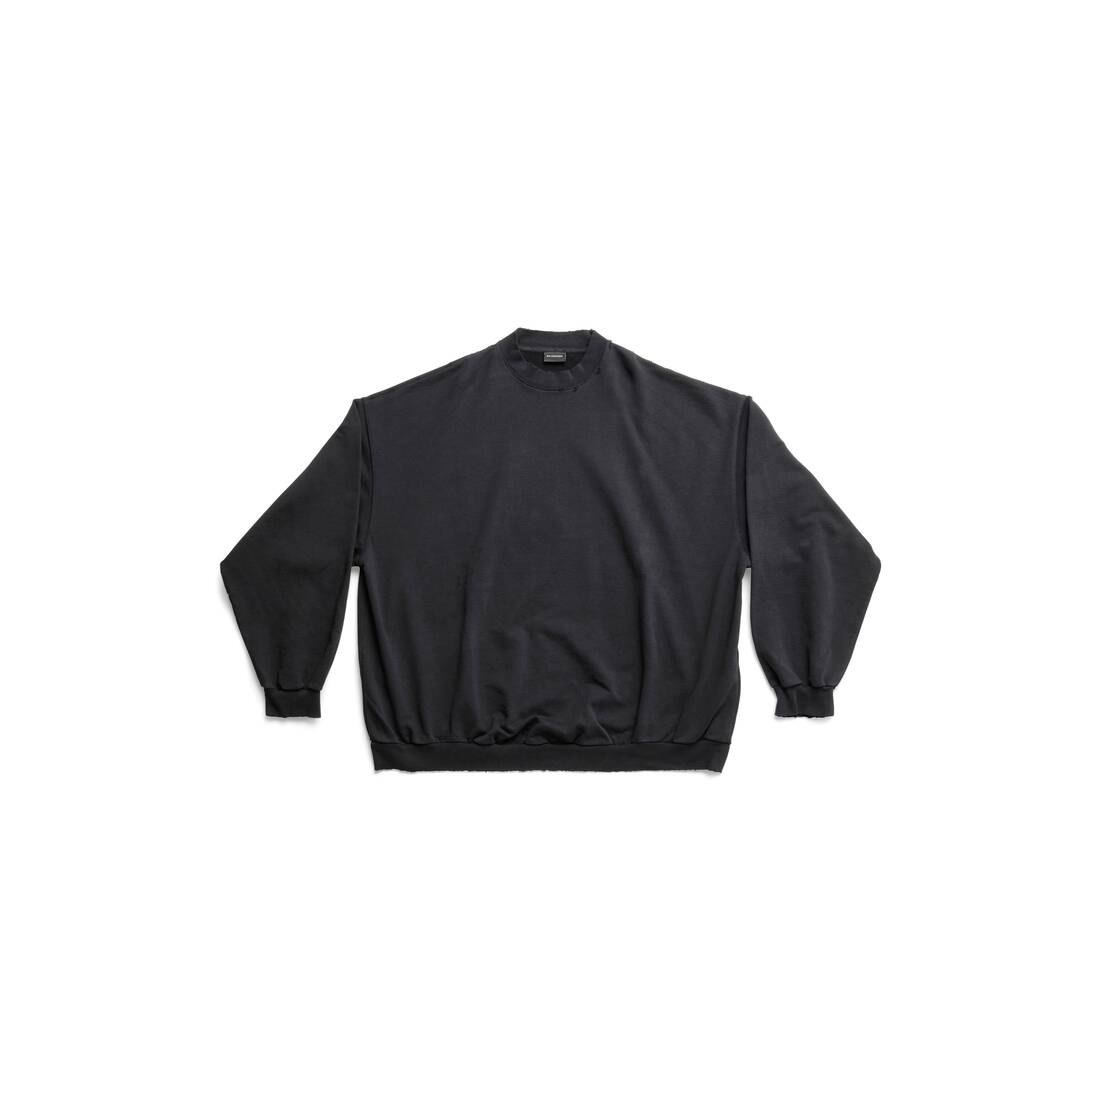 Balenciaga Sweatshirt Oversized in Black Faded | Balenciaga US